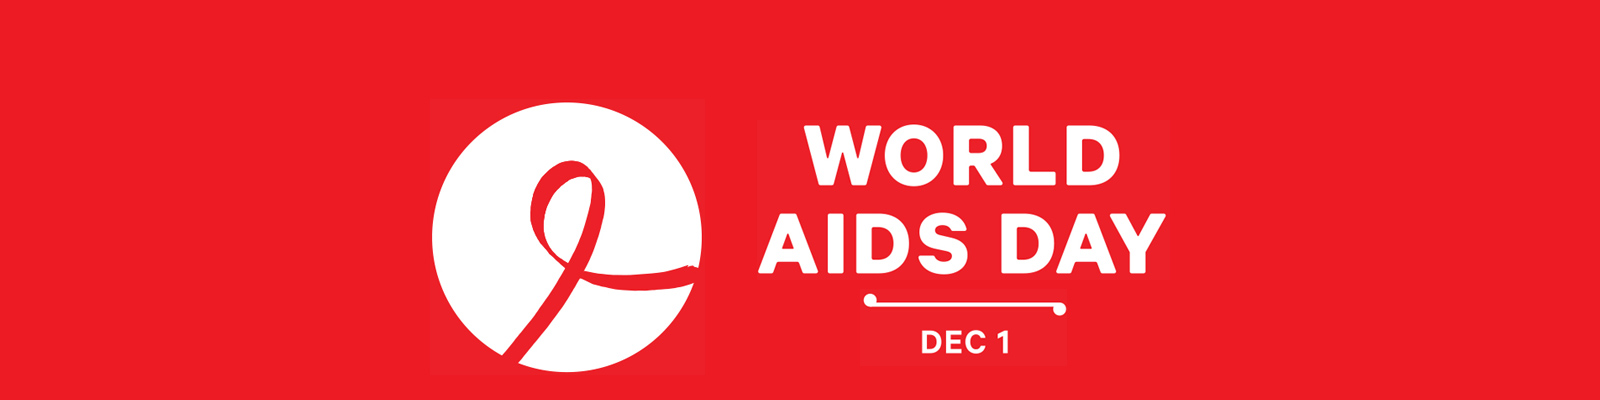 World AIDS Day dec 1 awareness banner